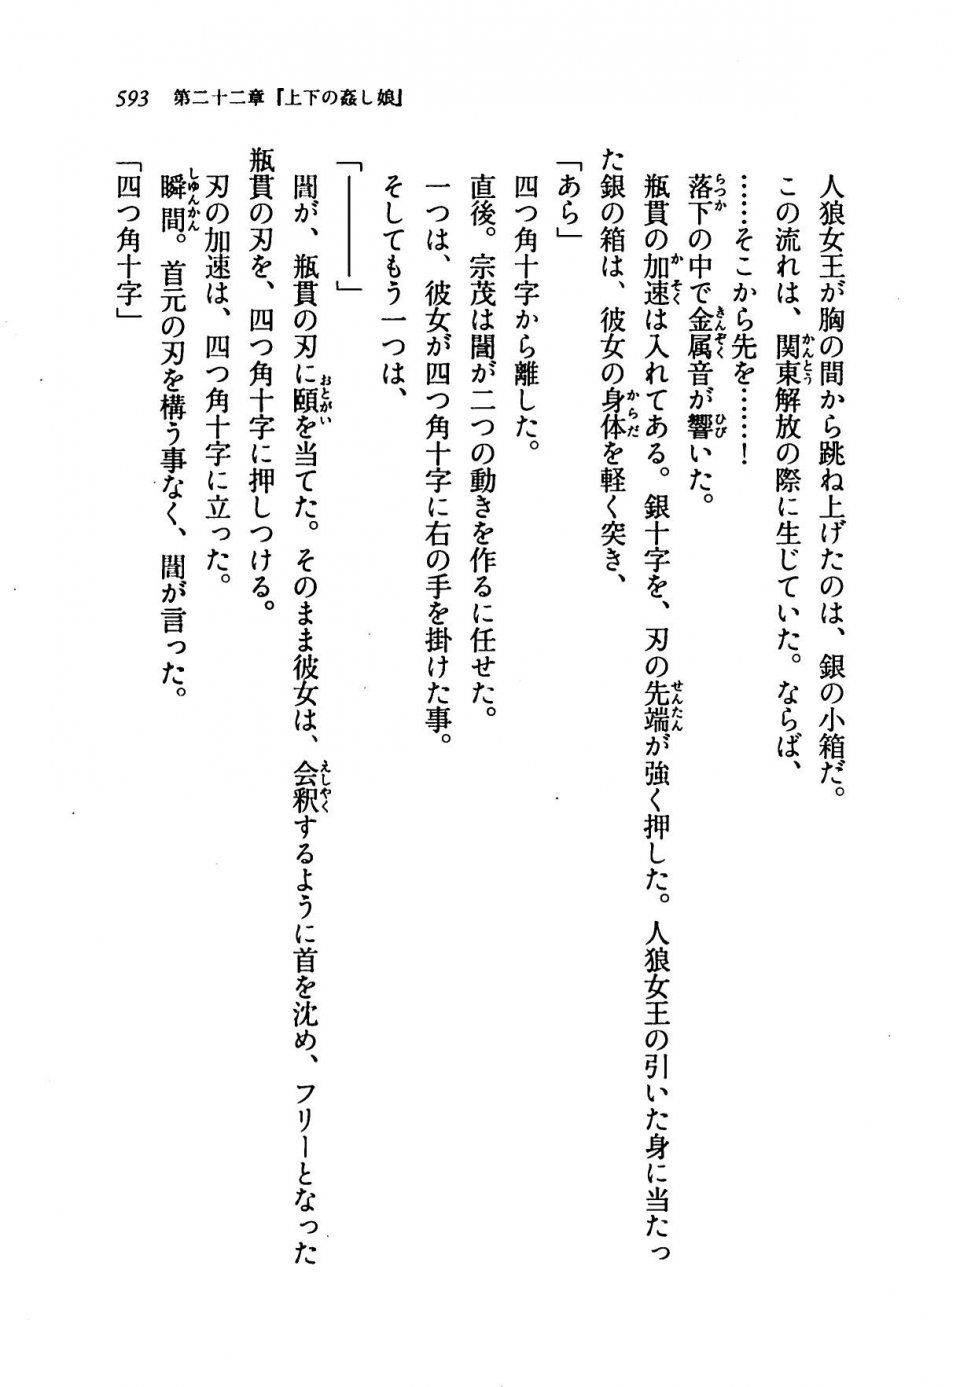 Kyoukai Senjou no Horizon LN Vol 19(8A) - Photo #593